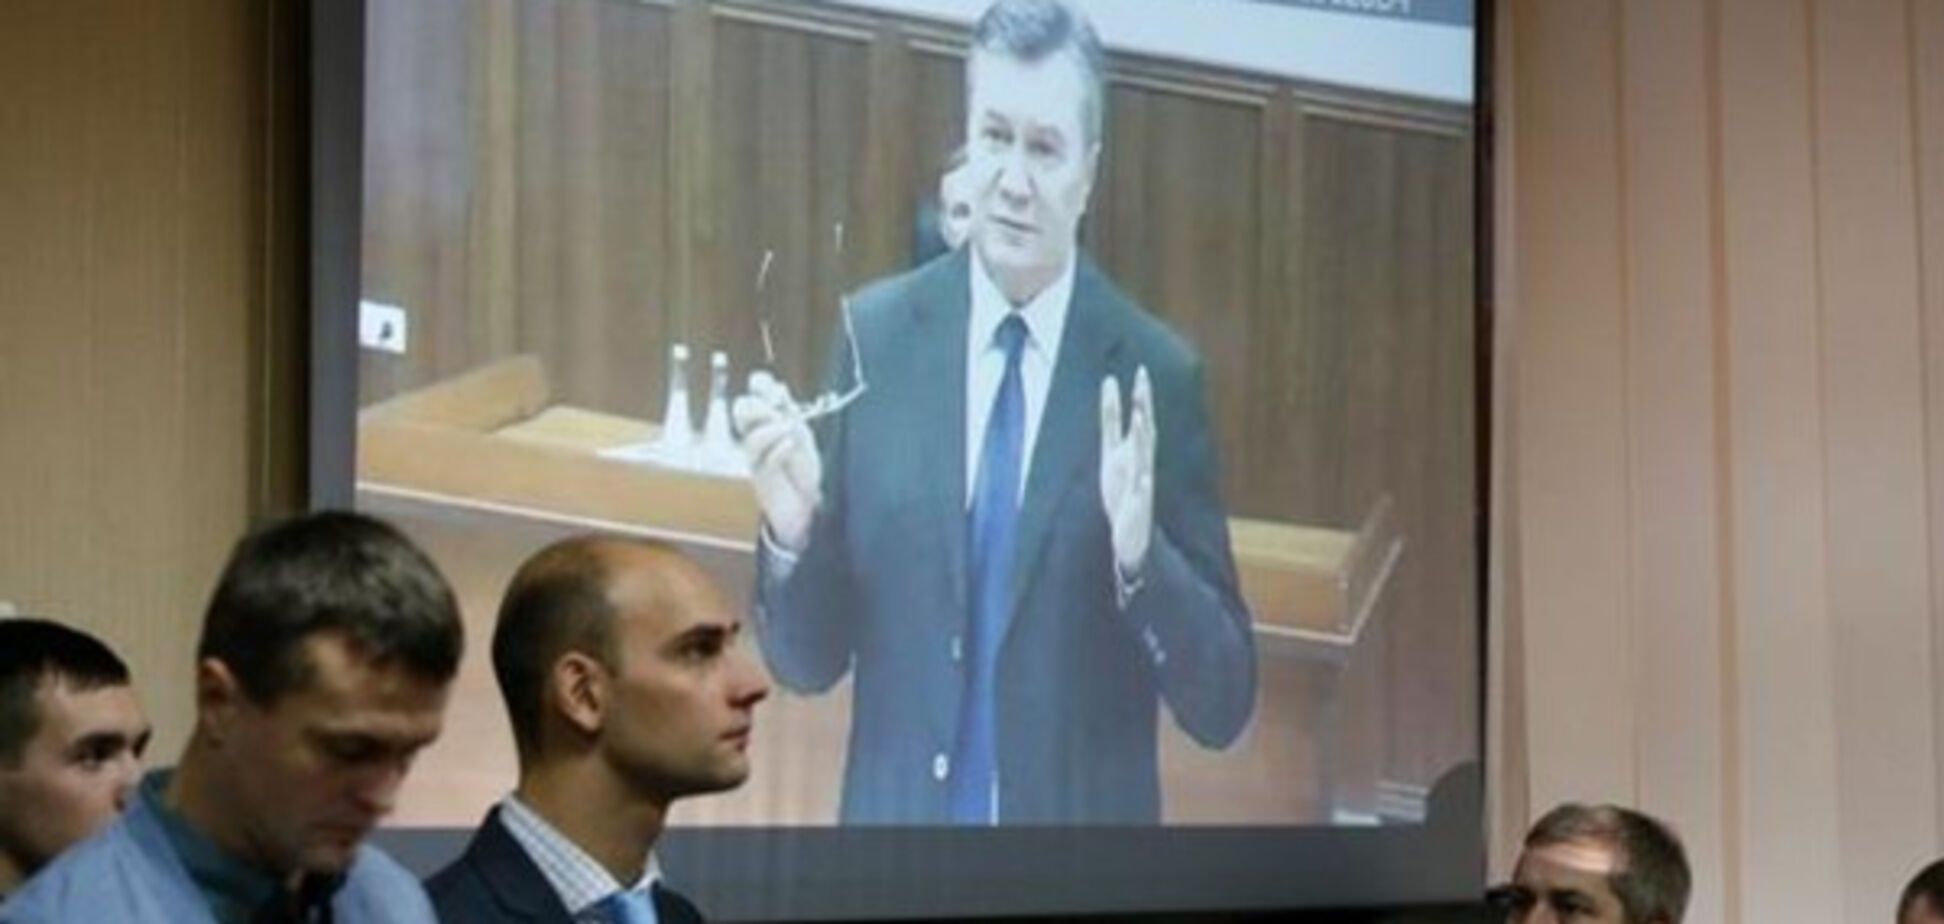 Публичного допроса украинских политиков в суде против Януковича не будет - Матиос